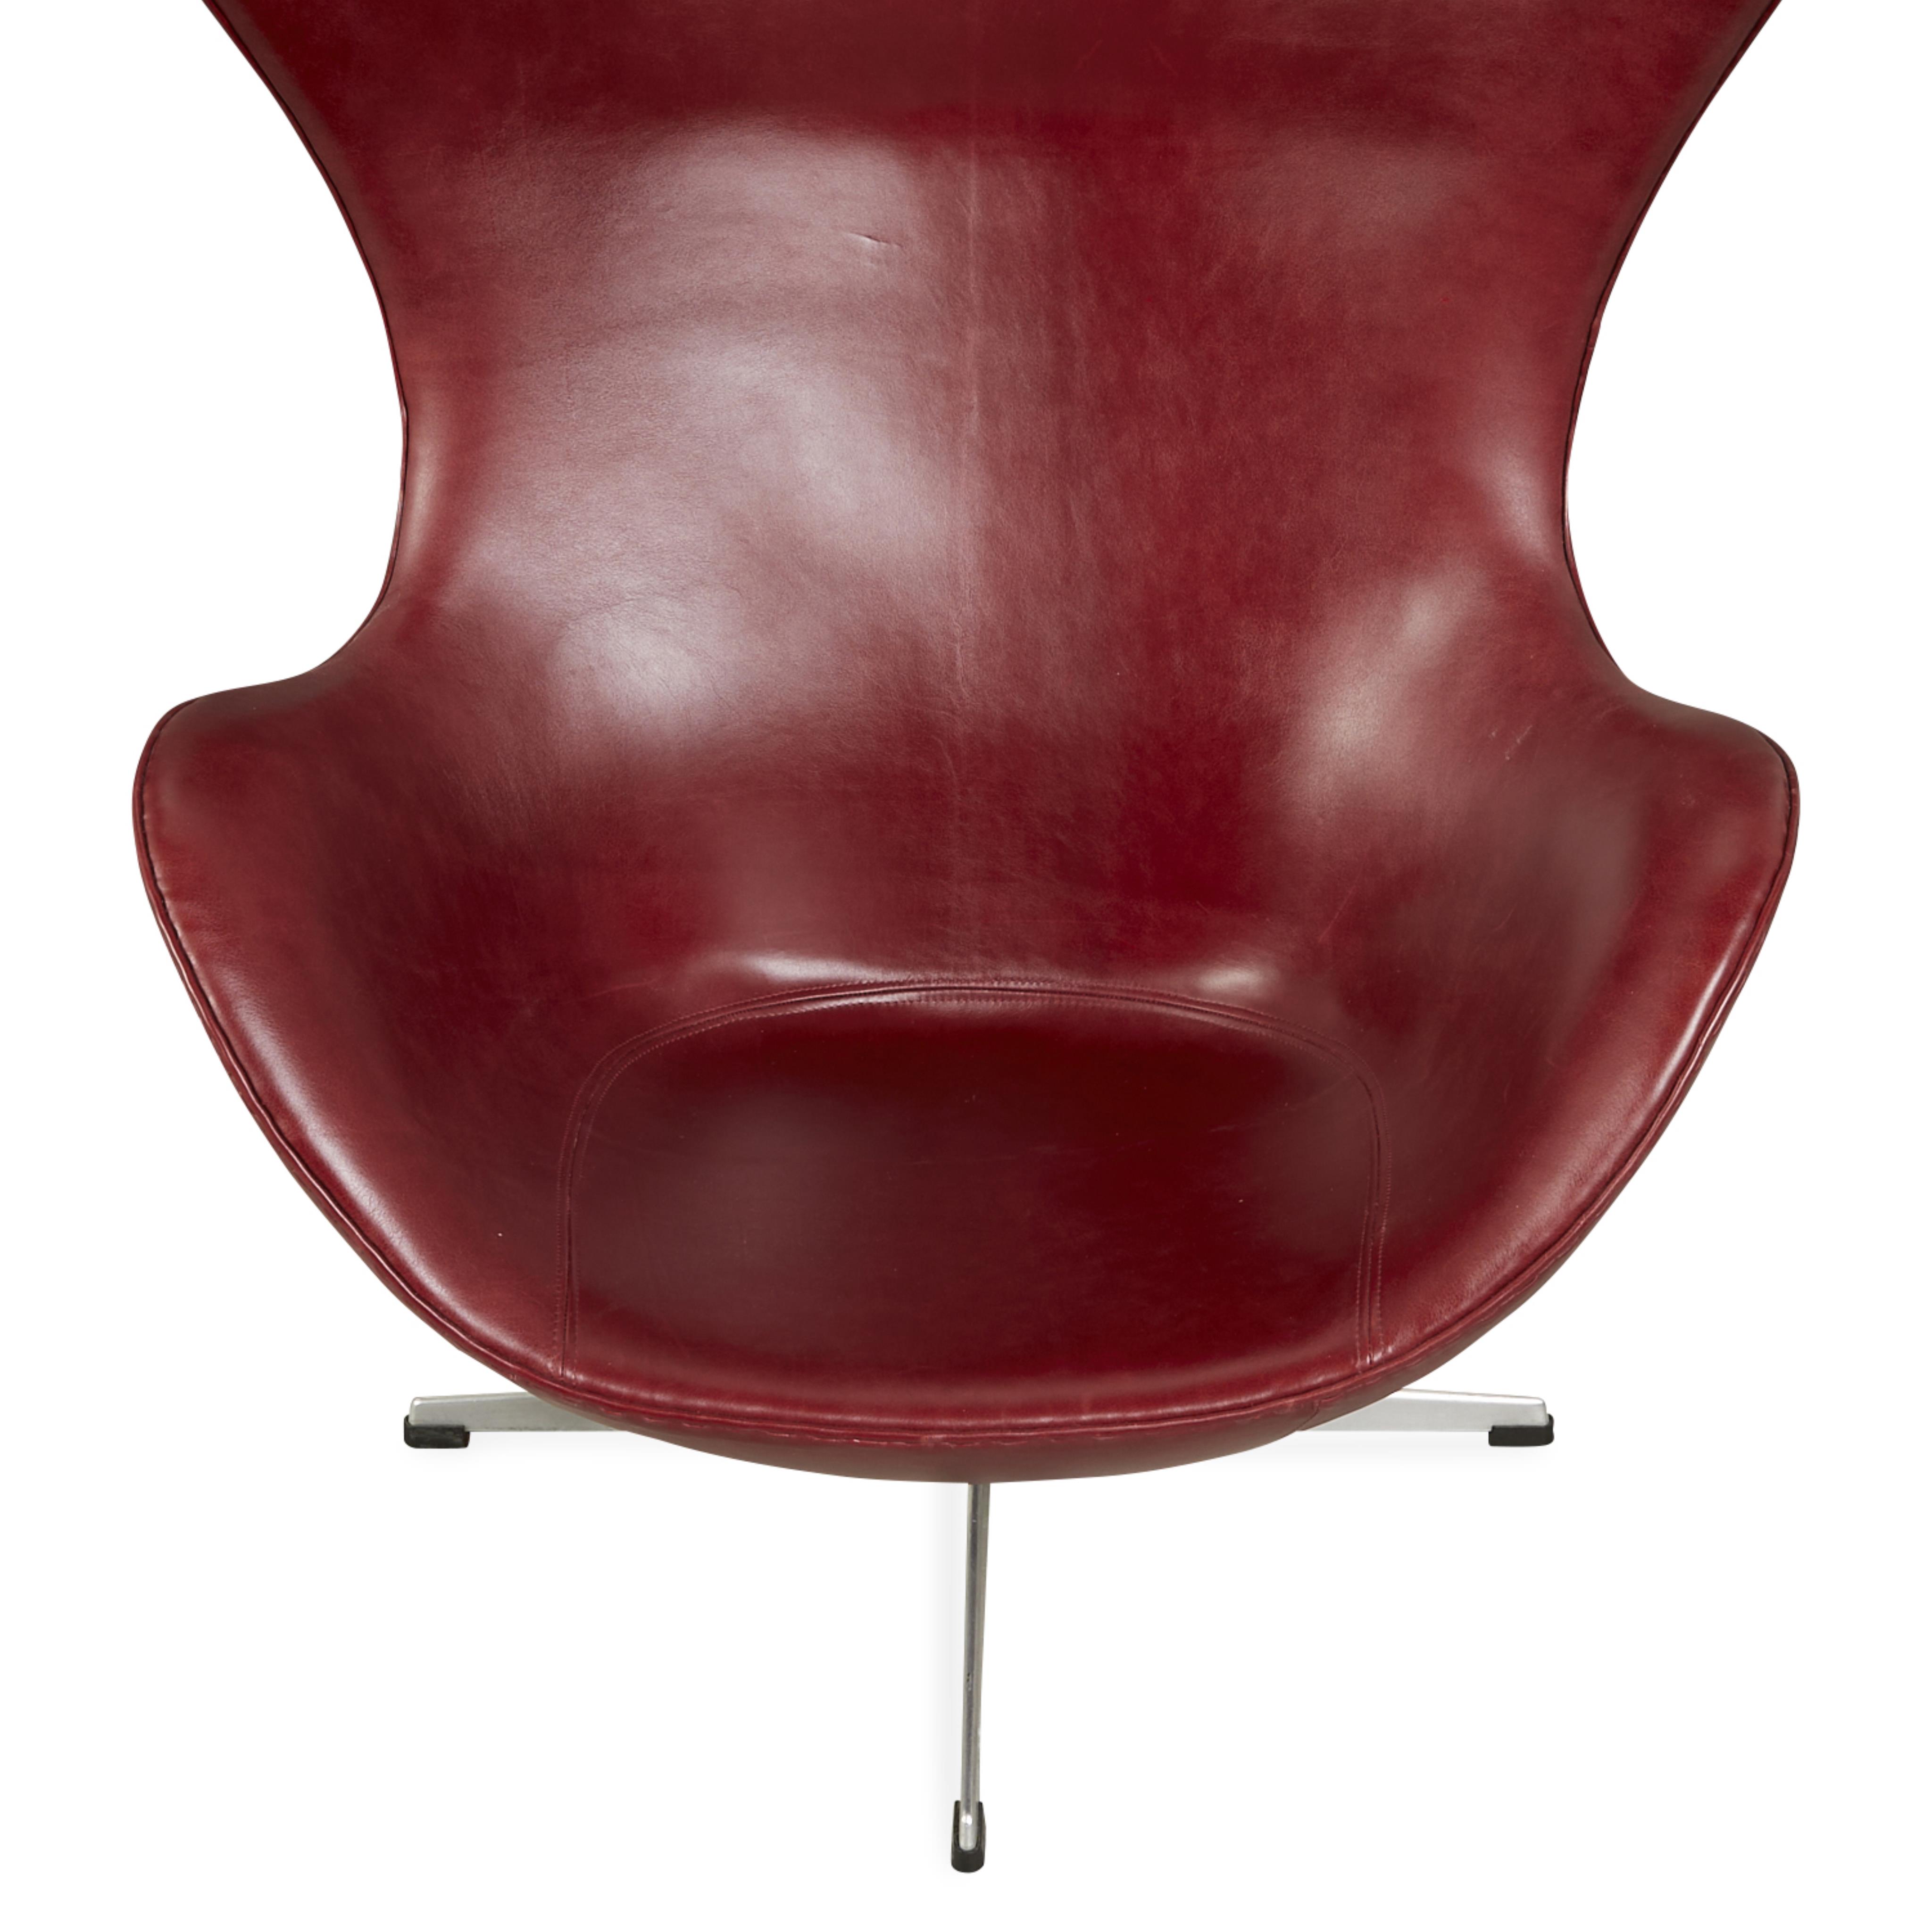 Arne Jacobsen for Hansen Leather Egg Chair 1964 - Image 10 of 17